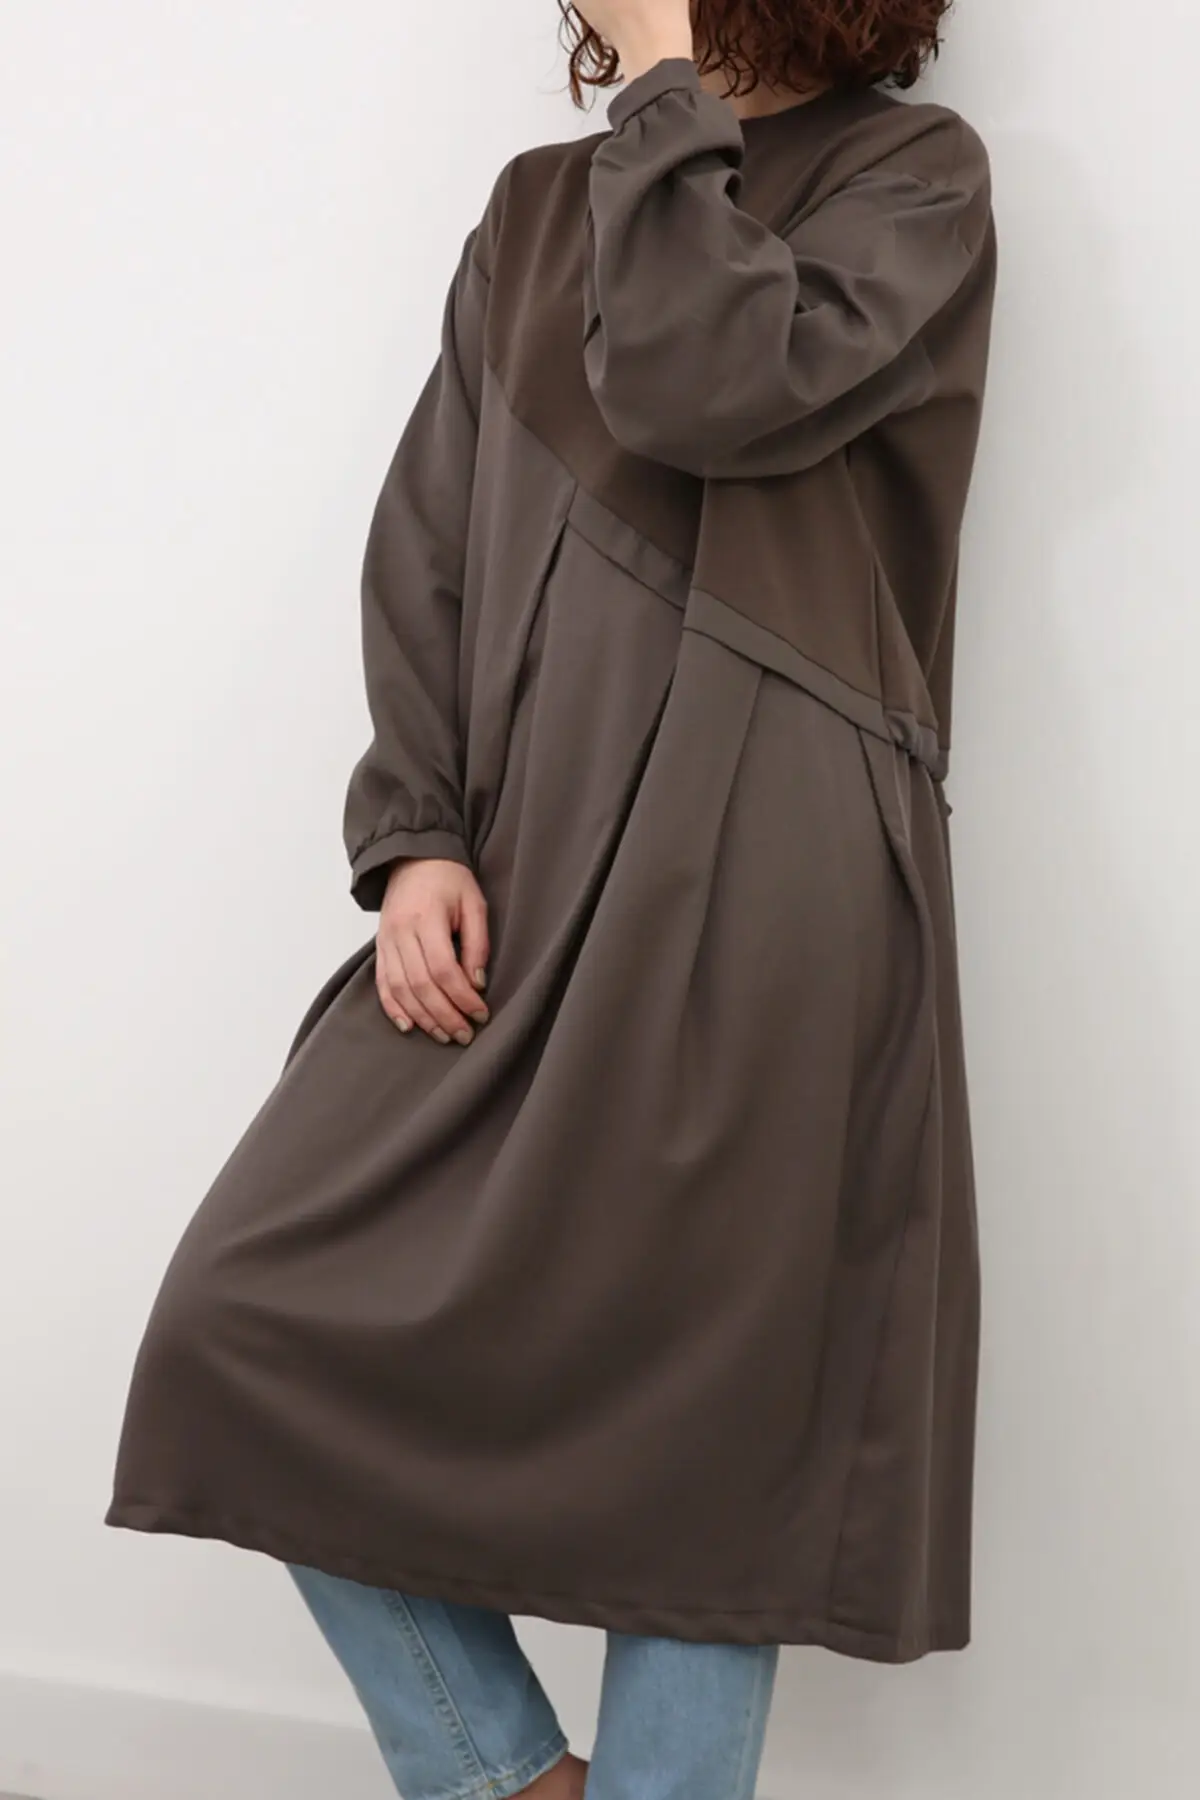 

Soft Khaki topped Pleated Tunic Sweater Muslim Tunic 2021 Fashion